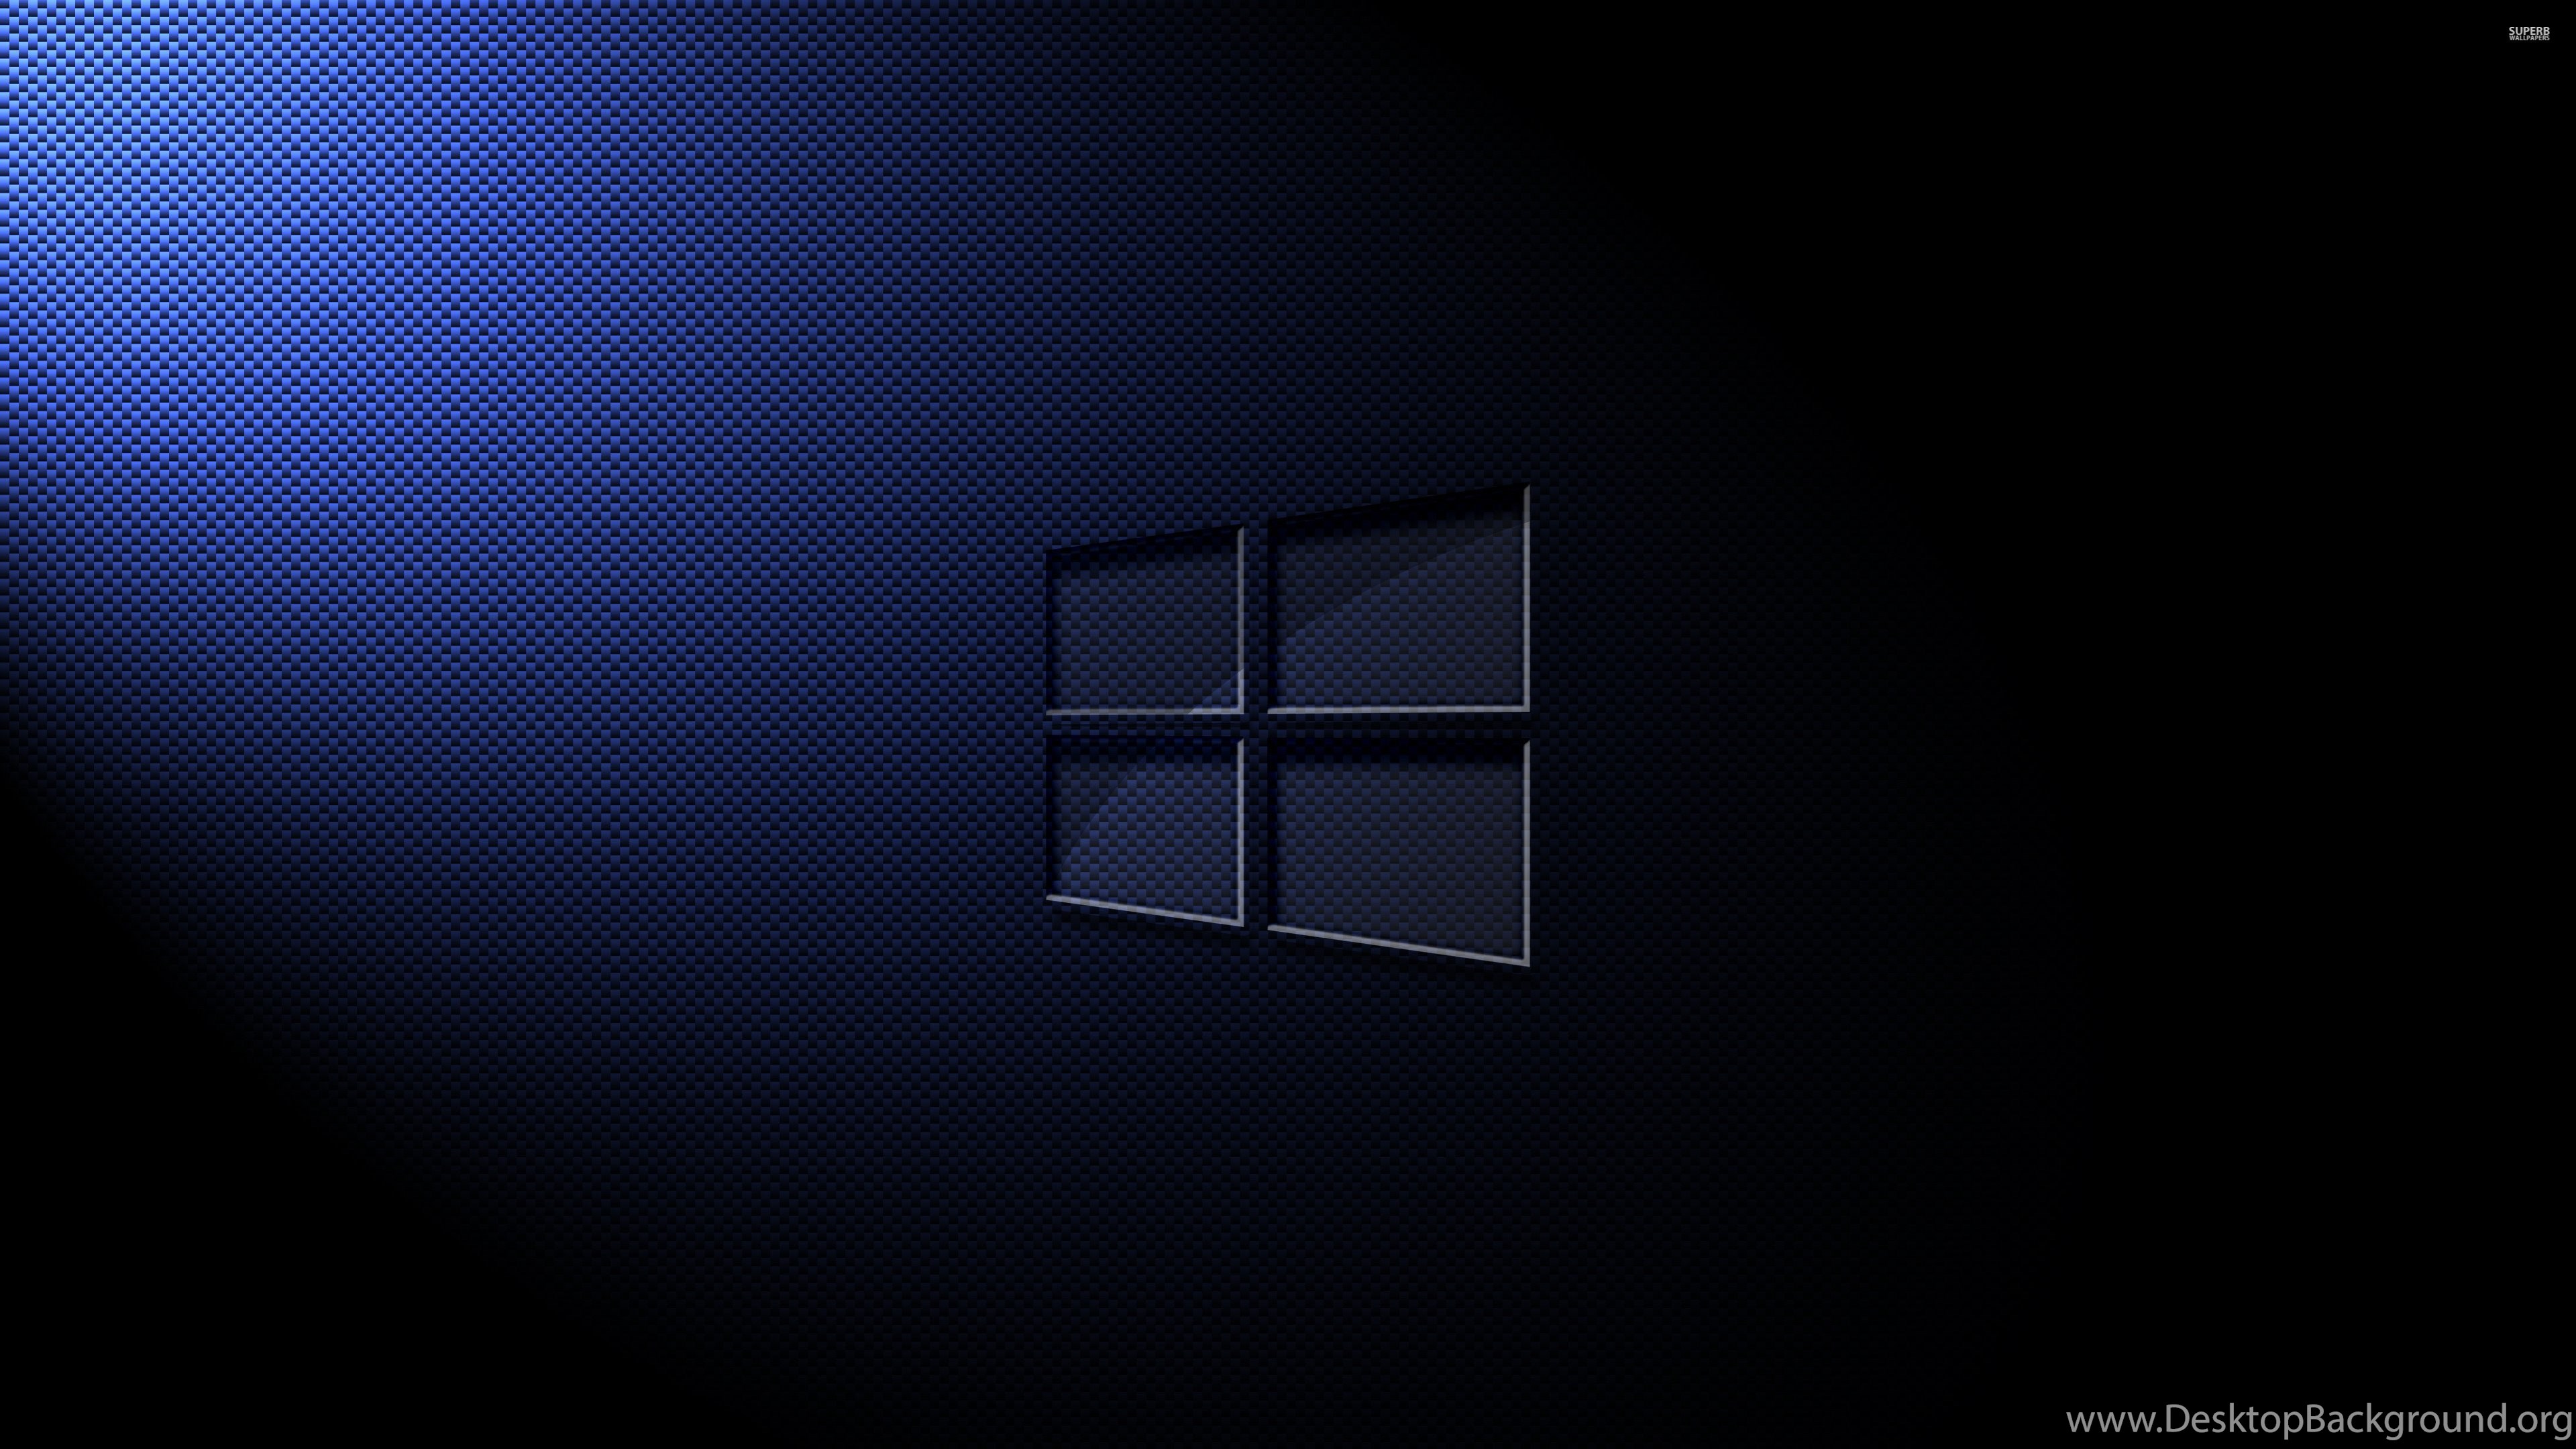 Glass Windows 10 On Carbon Fiber Wallpaper Computer Wallpaper. Desktop Background